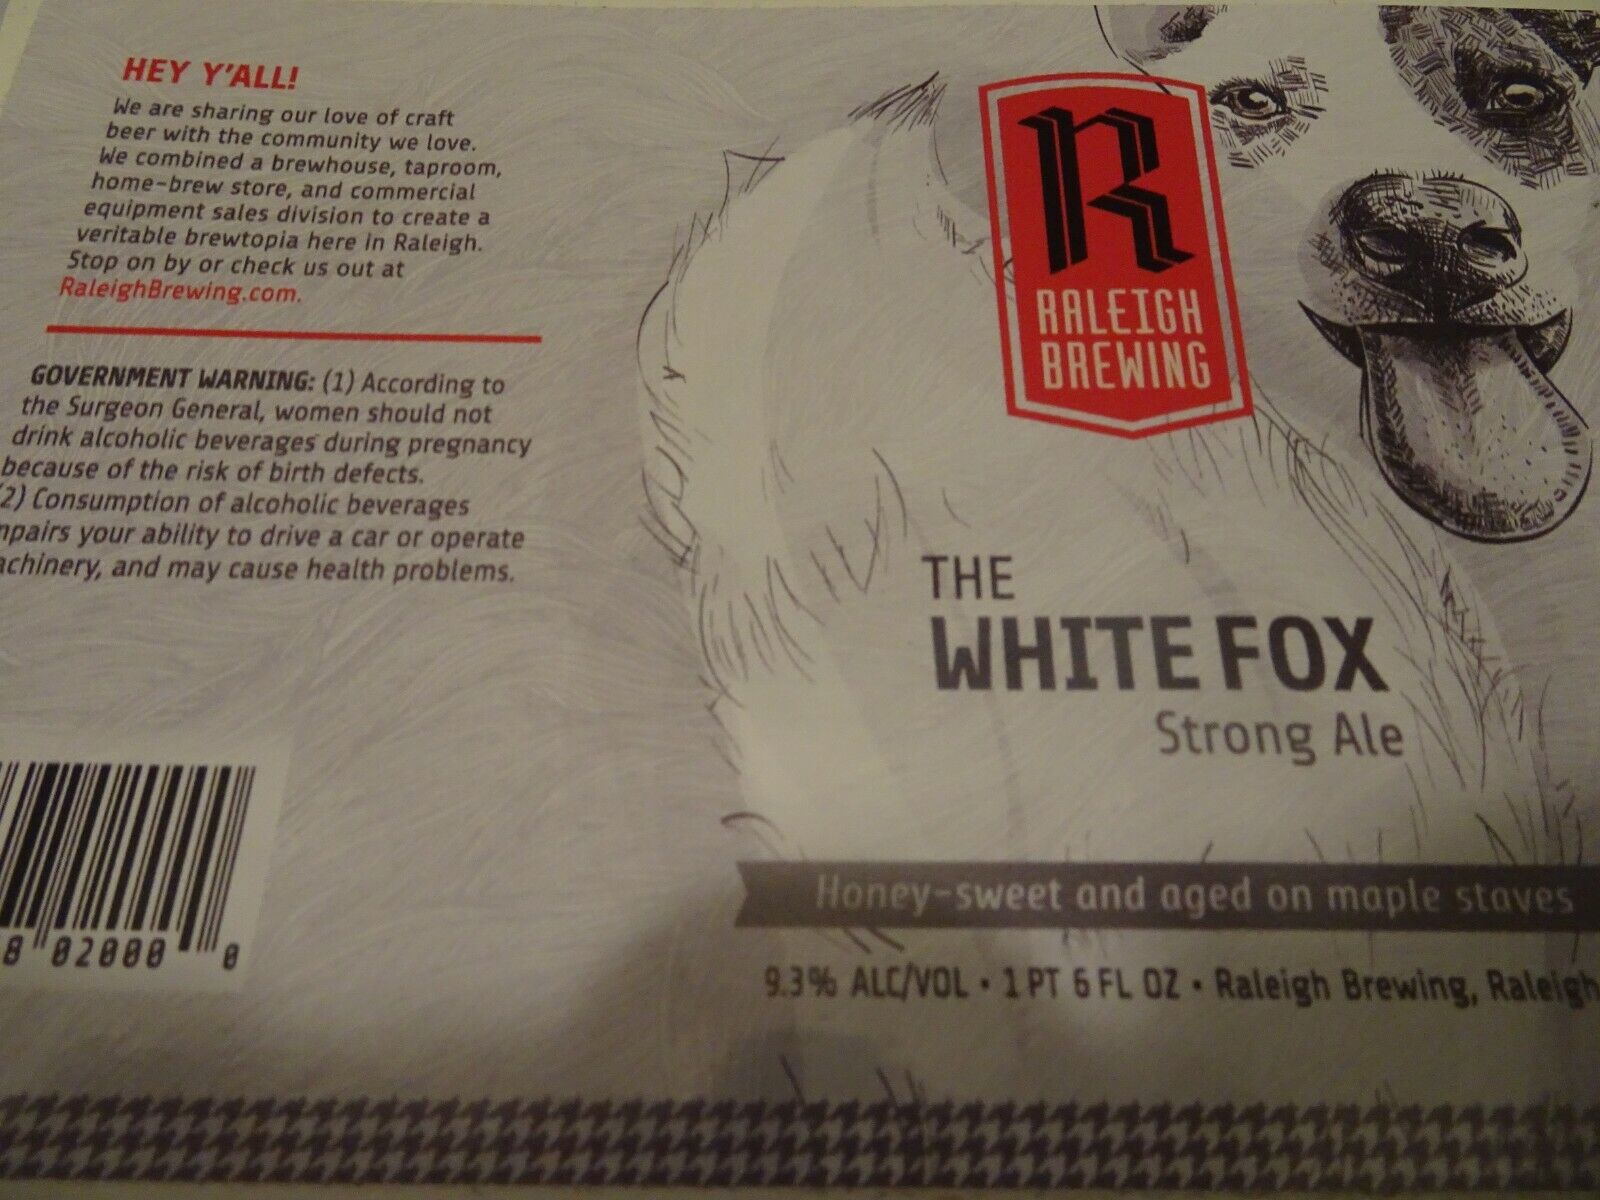 Raleigh Brewing Co. brewery Unused White Fox Ale Label Sticker Без бренда - фотография #2